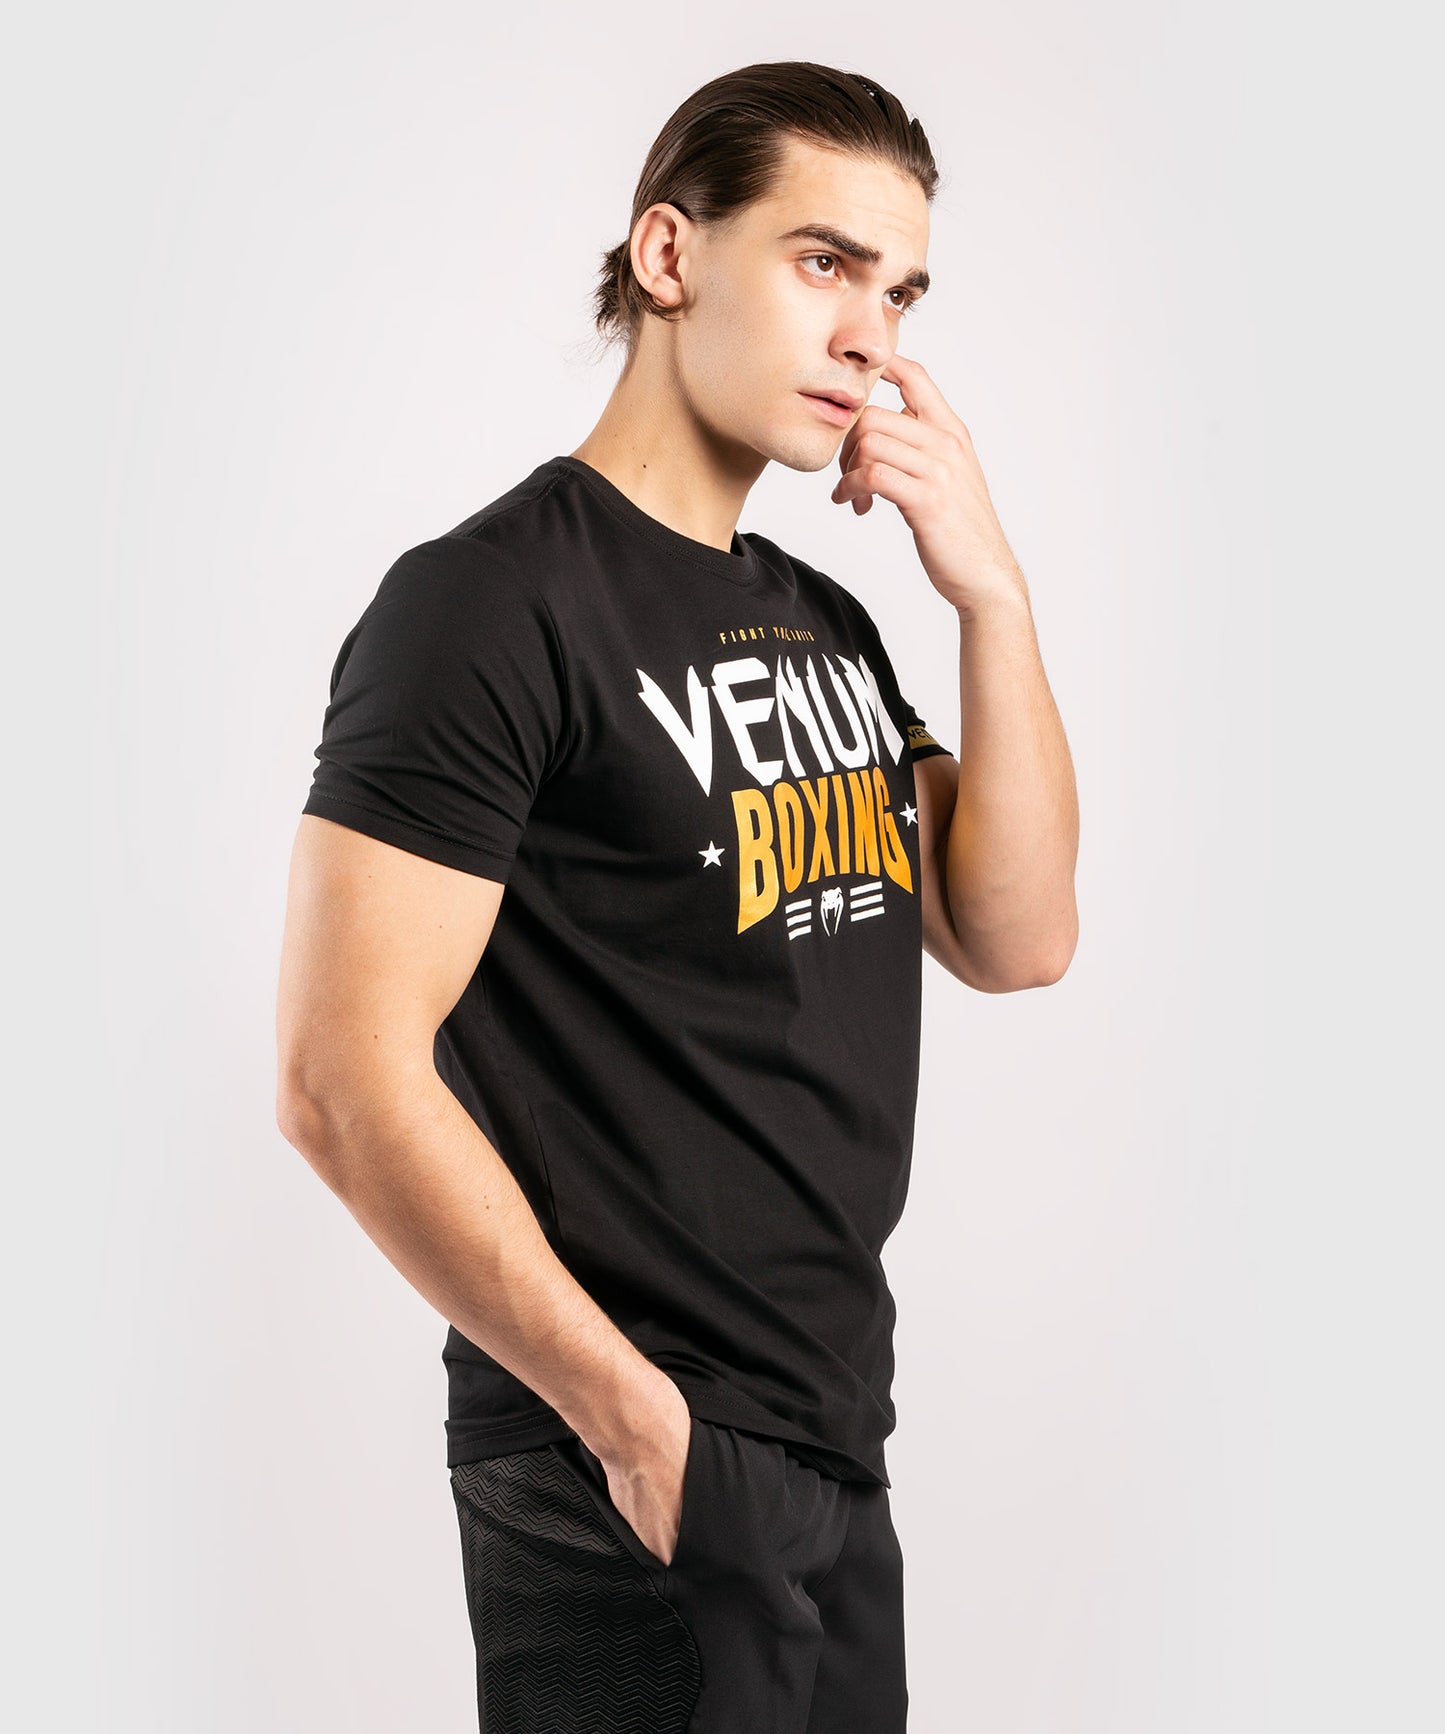 Camiseta Venum Boxing Classic 20 Negro / Dorado